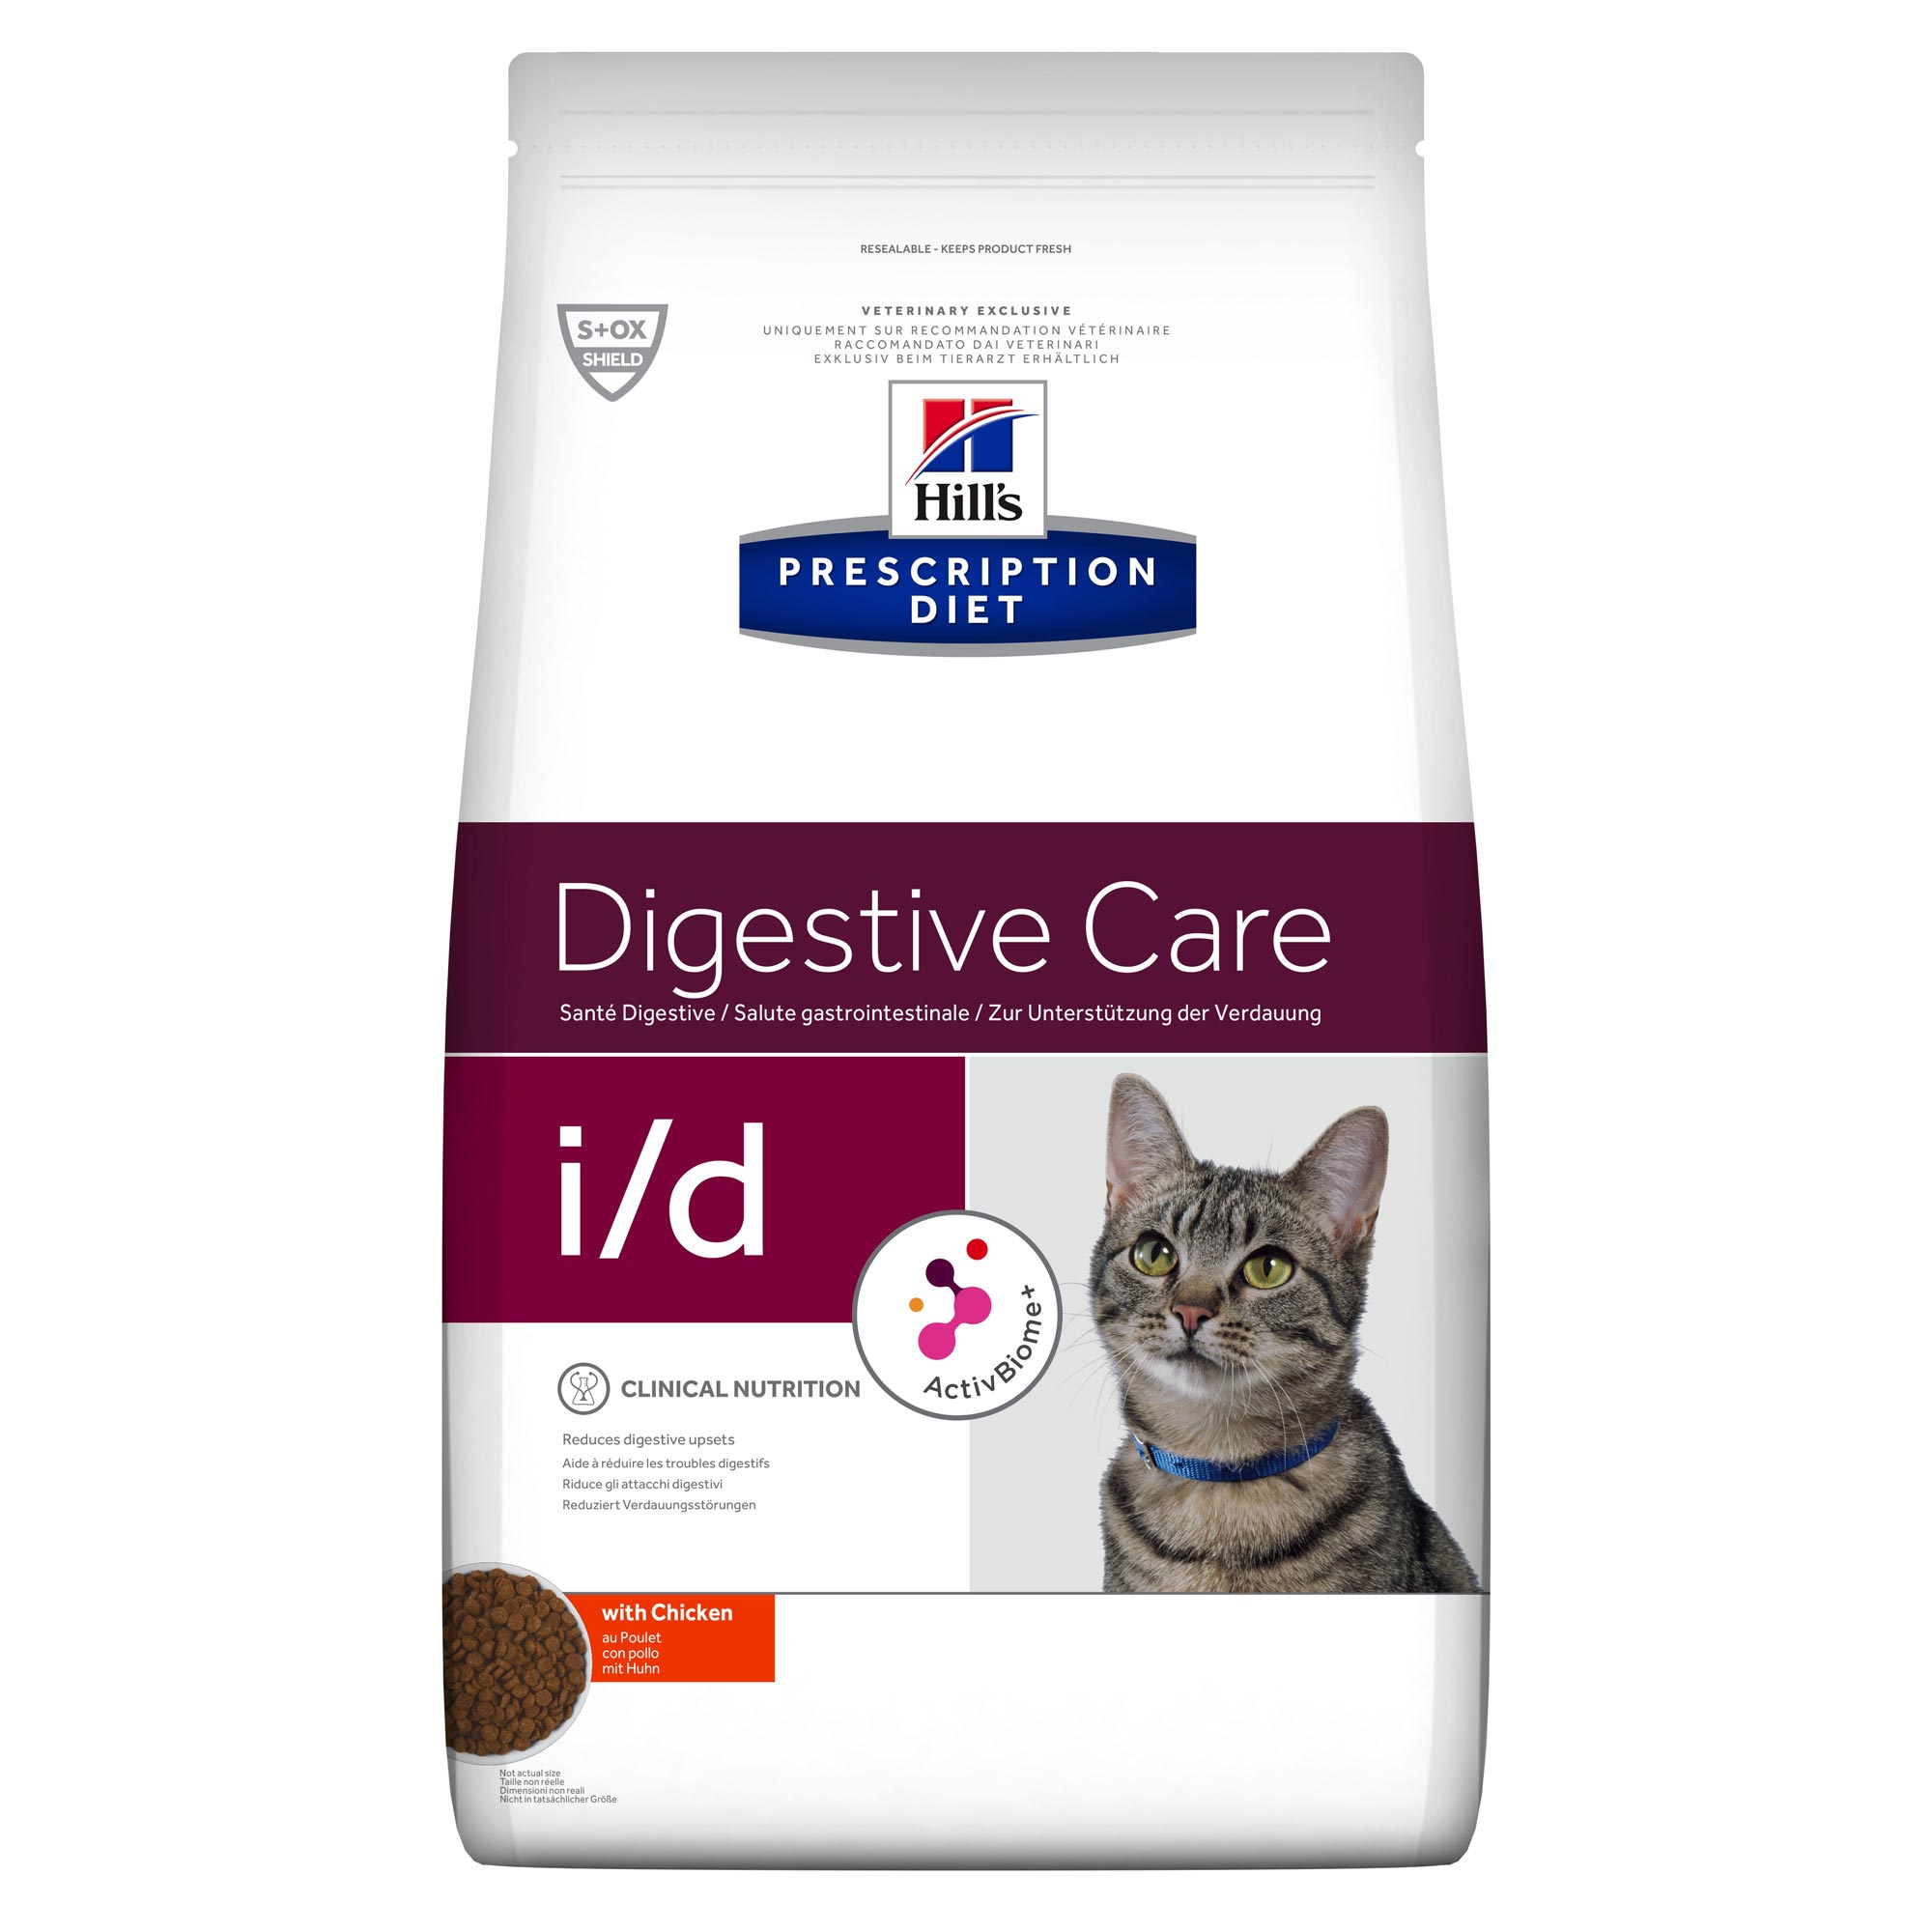 Hill's Prescription Diet Digestive Care i/d Kat - 400g